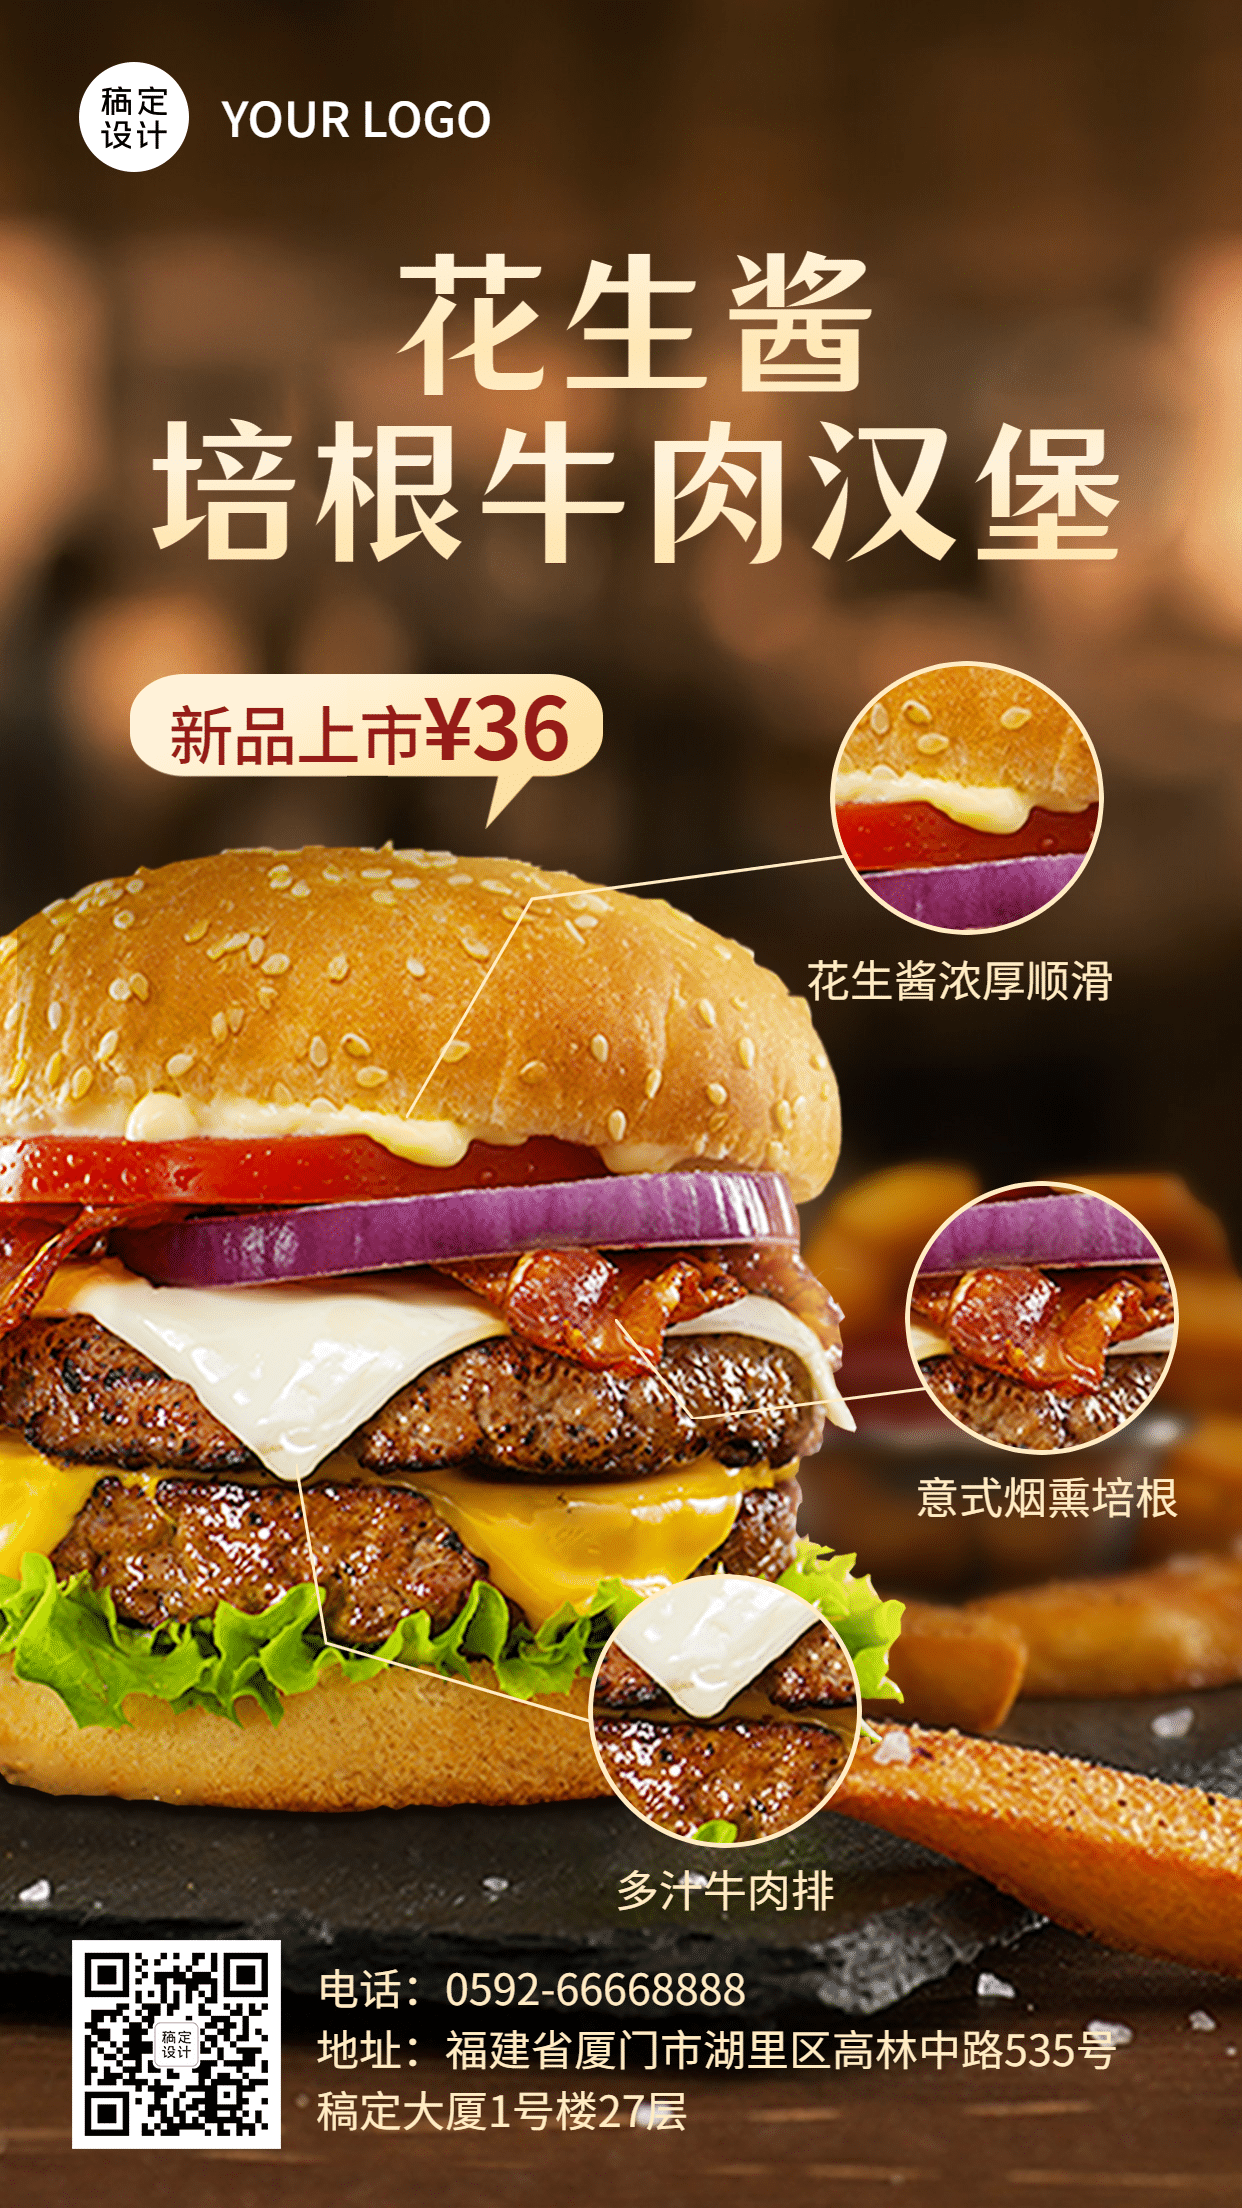 西餐汉堡促销活动实景手机海报预览效果